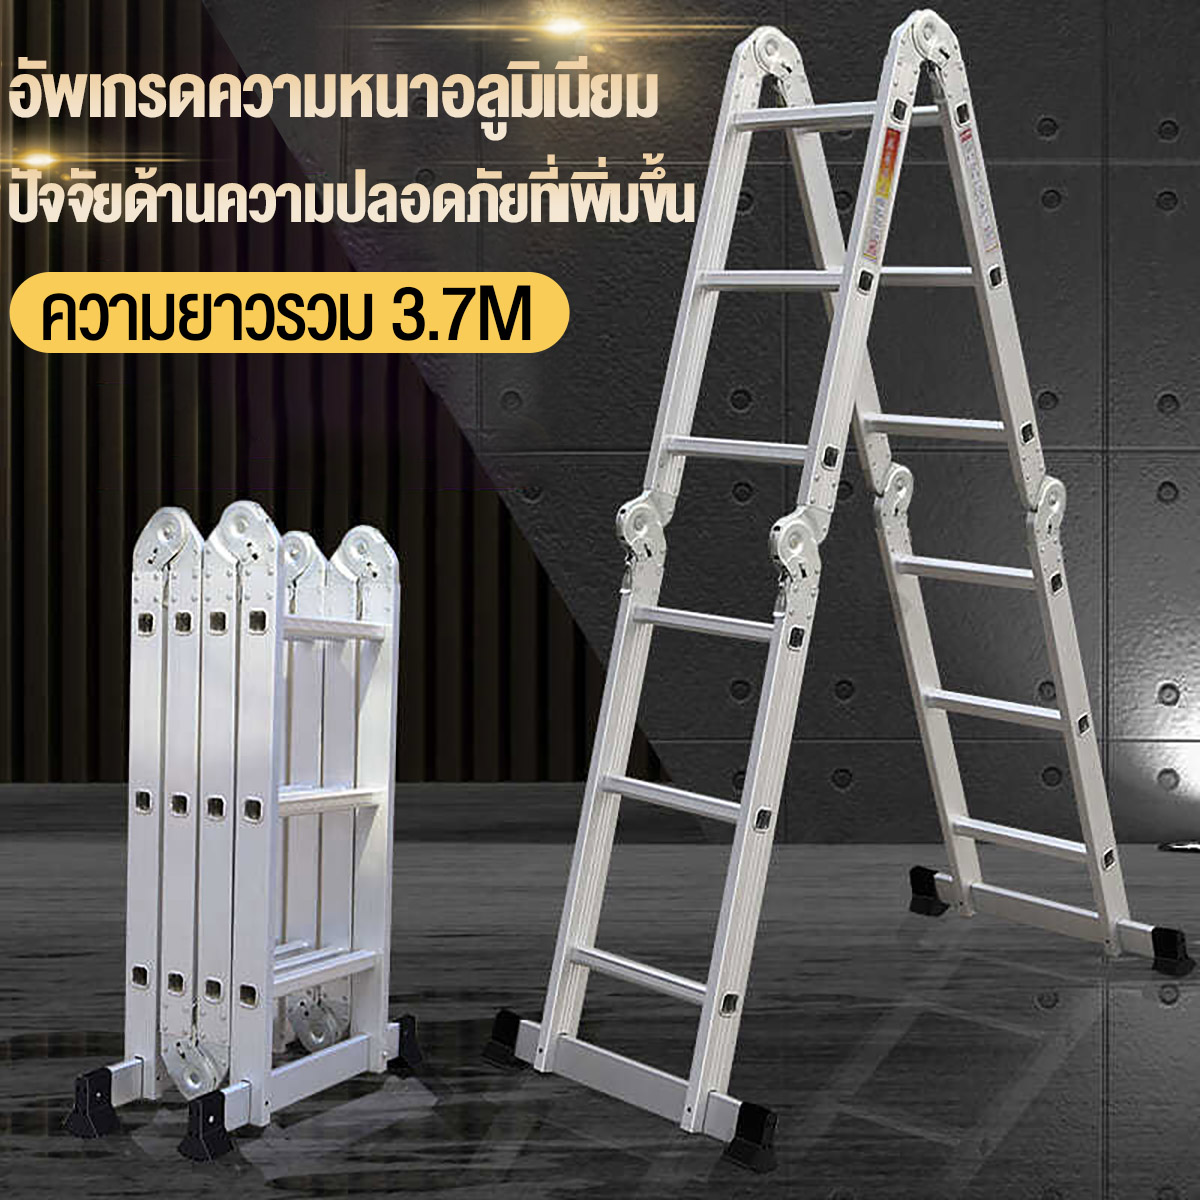 BOTTL 5.8M Folding ladder บรรไดพับได้ บันไดอลูเนียม 4.7Mบันไดพับได้อลูมิเนียม บันไดพับได้ บันไดช่าง 16 or 20 ขั้น รุ่น 4x4 or 4x5 บันไดอลูมิ